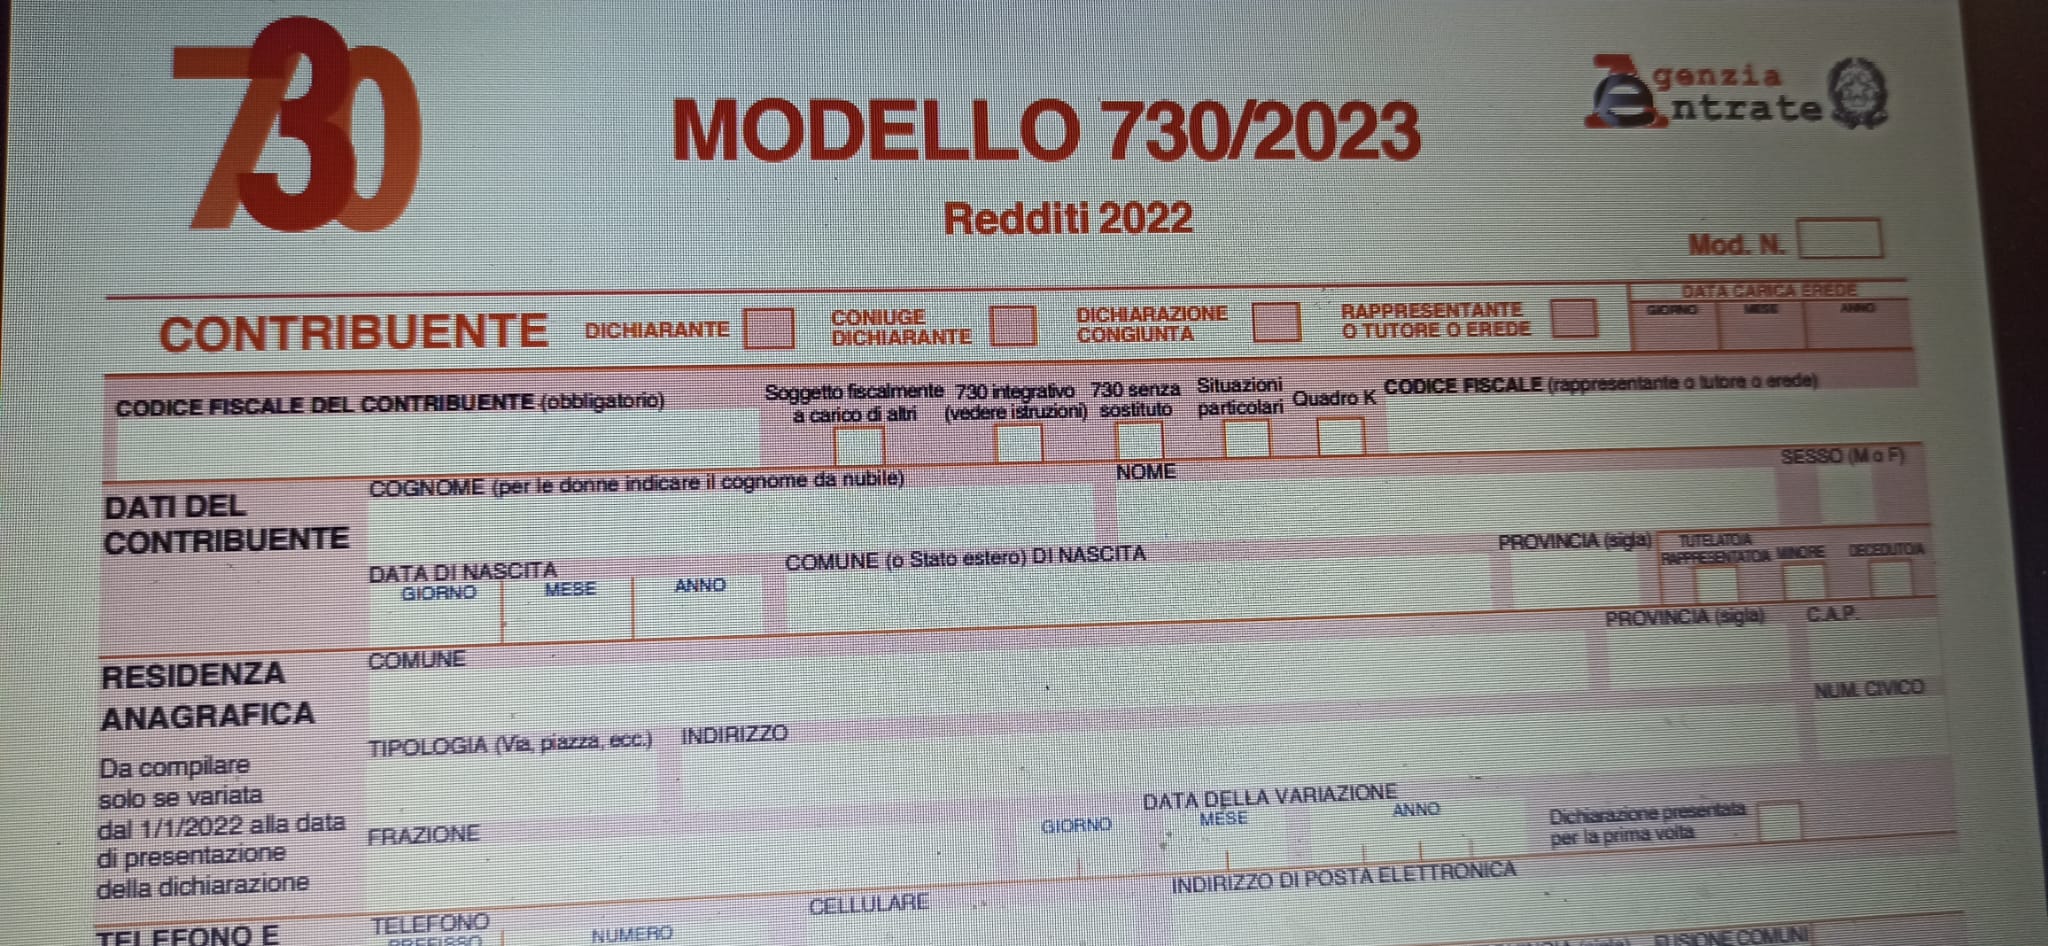 Modello 730/2023 precompilato, invio dall’11 maggio